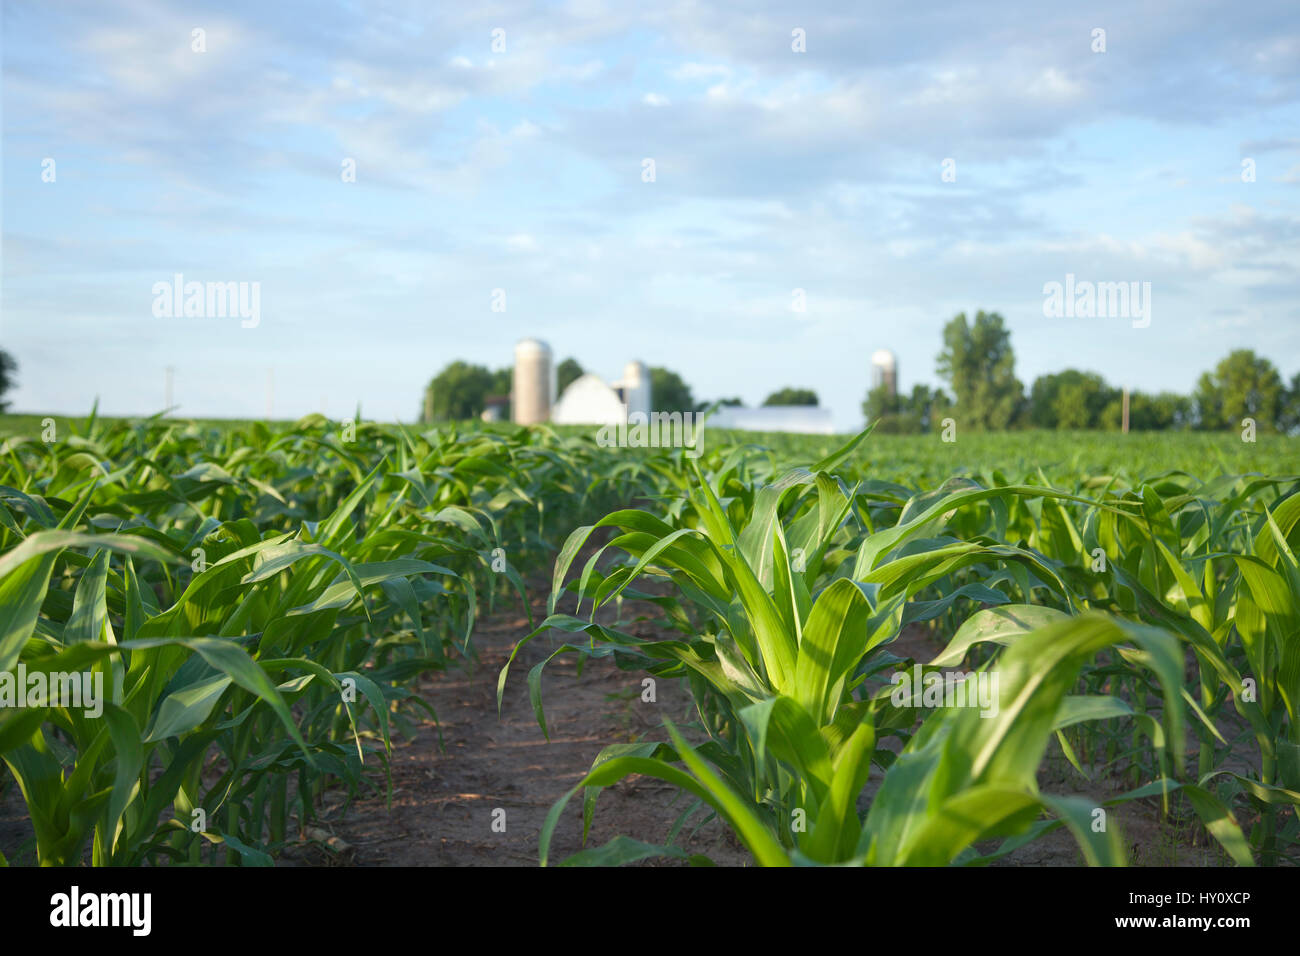 El enfoque selectivo, ángulo de visión baja de un maizal y granja en una mañana soleada Foto de stock